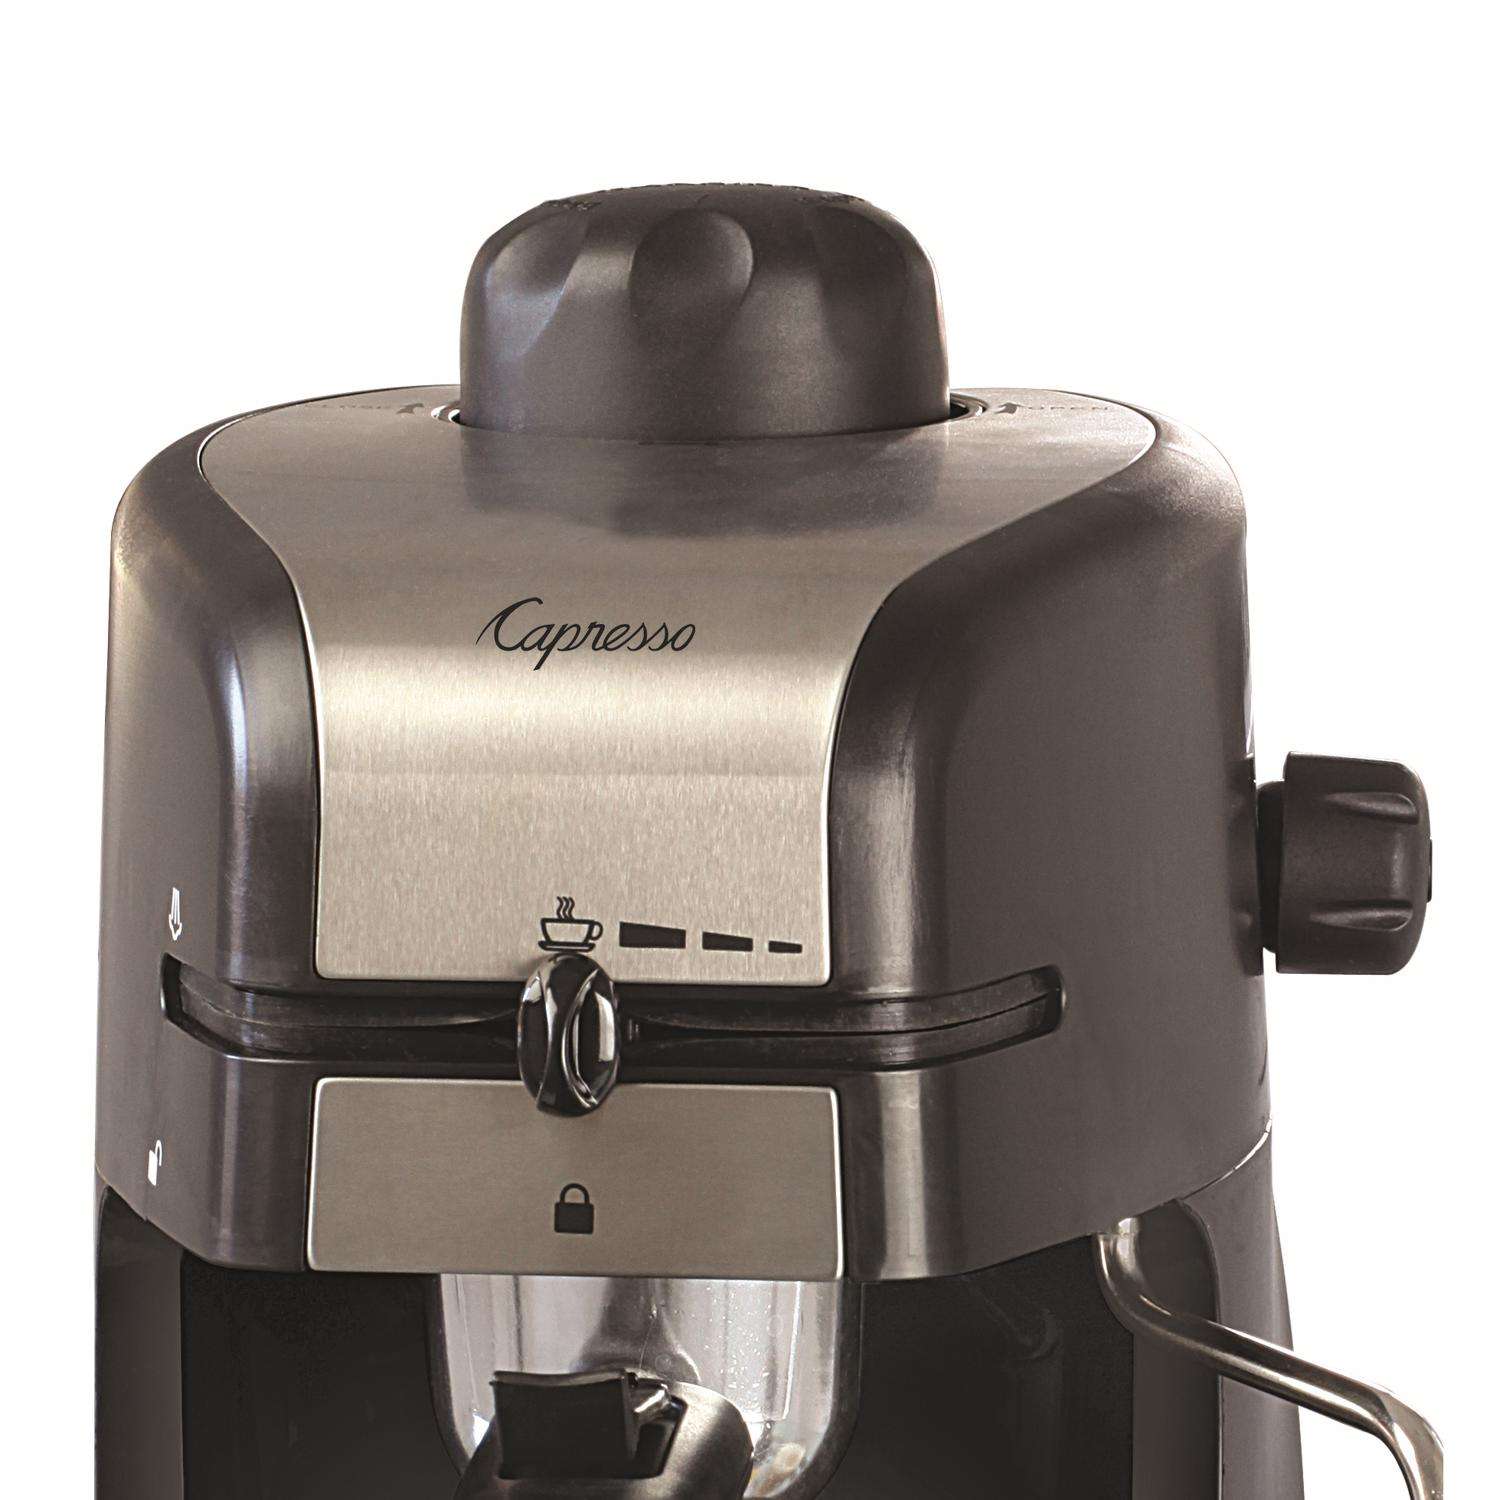 4-Cup Espresso & Cappuccino Machine